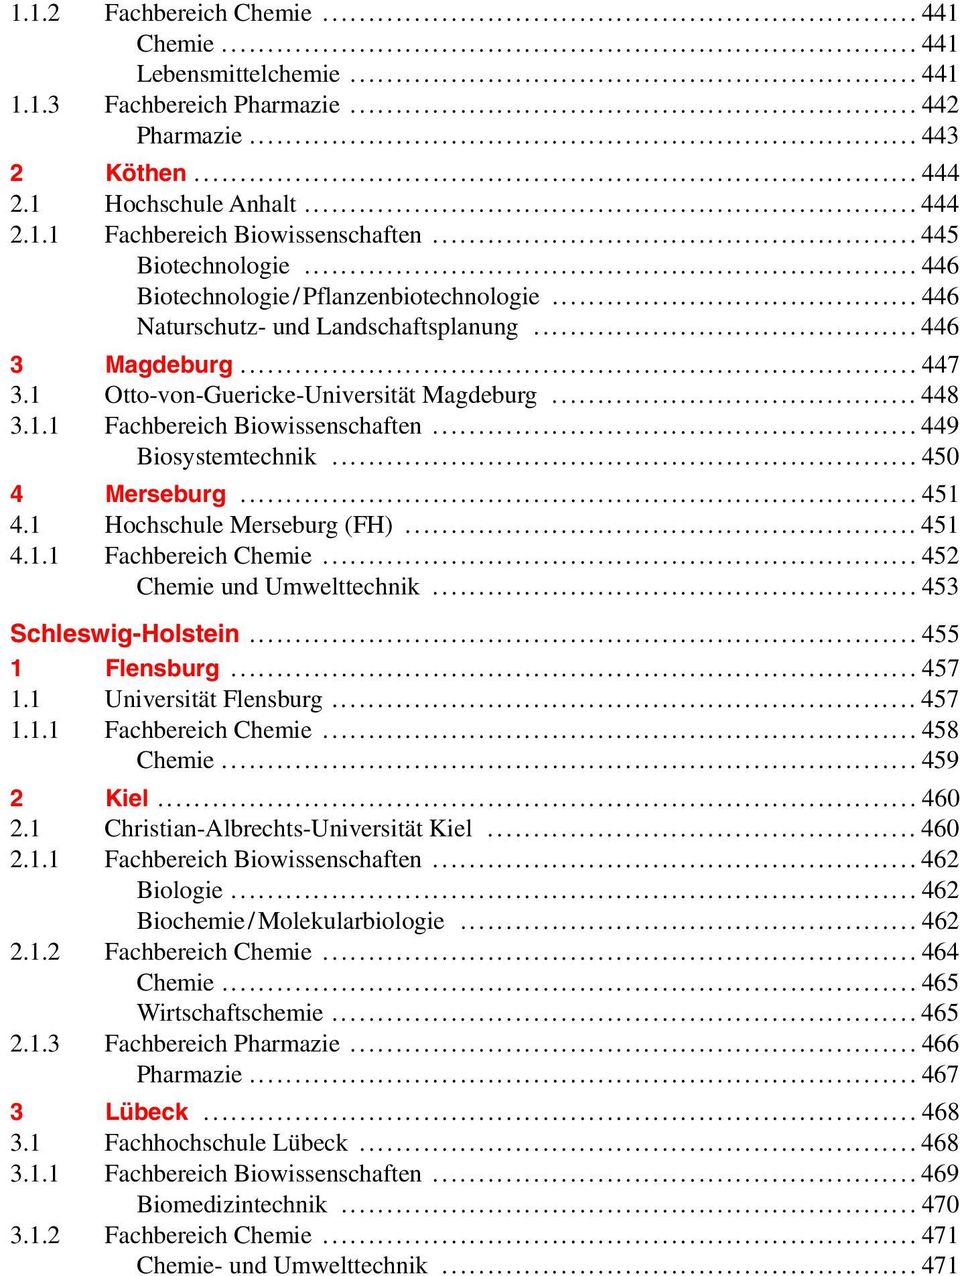 .. 449 Biosystemtechnik... 450 4 Merseburg... 451 4.1 Hochschule Merseburg (FH)... 451 4.1.1 Fachbereich Chemie... 452 Chemie und Umwelttechnik... 453 Schleswig-Holstein... 455 1 Flensburg... 457 1.